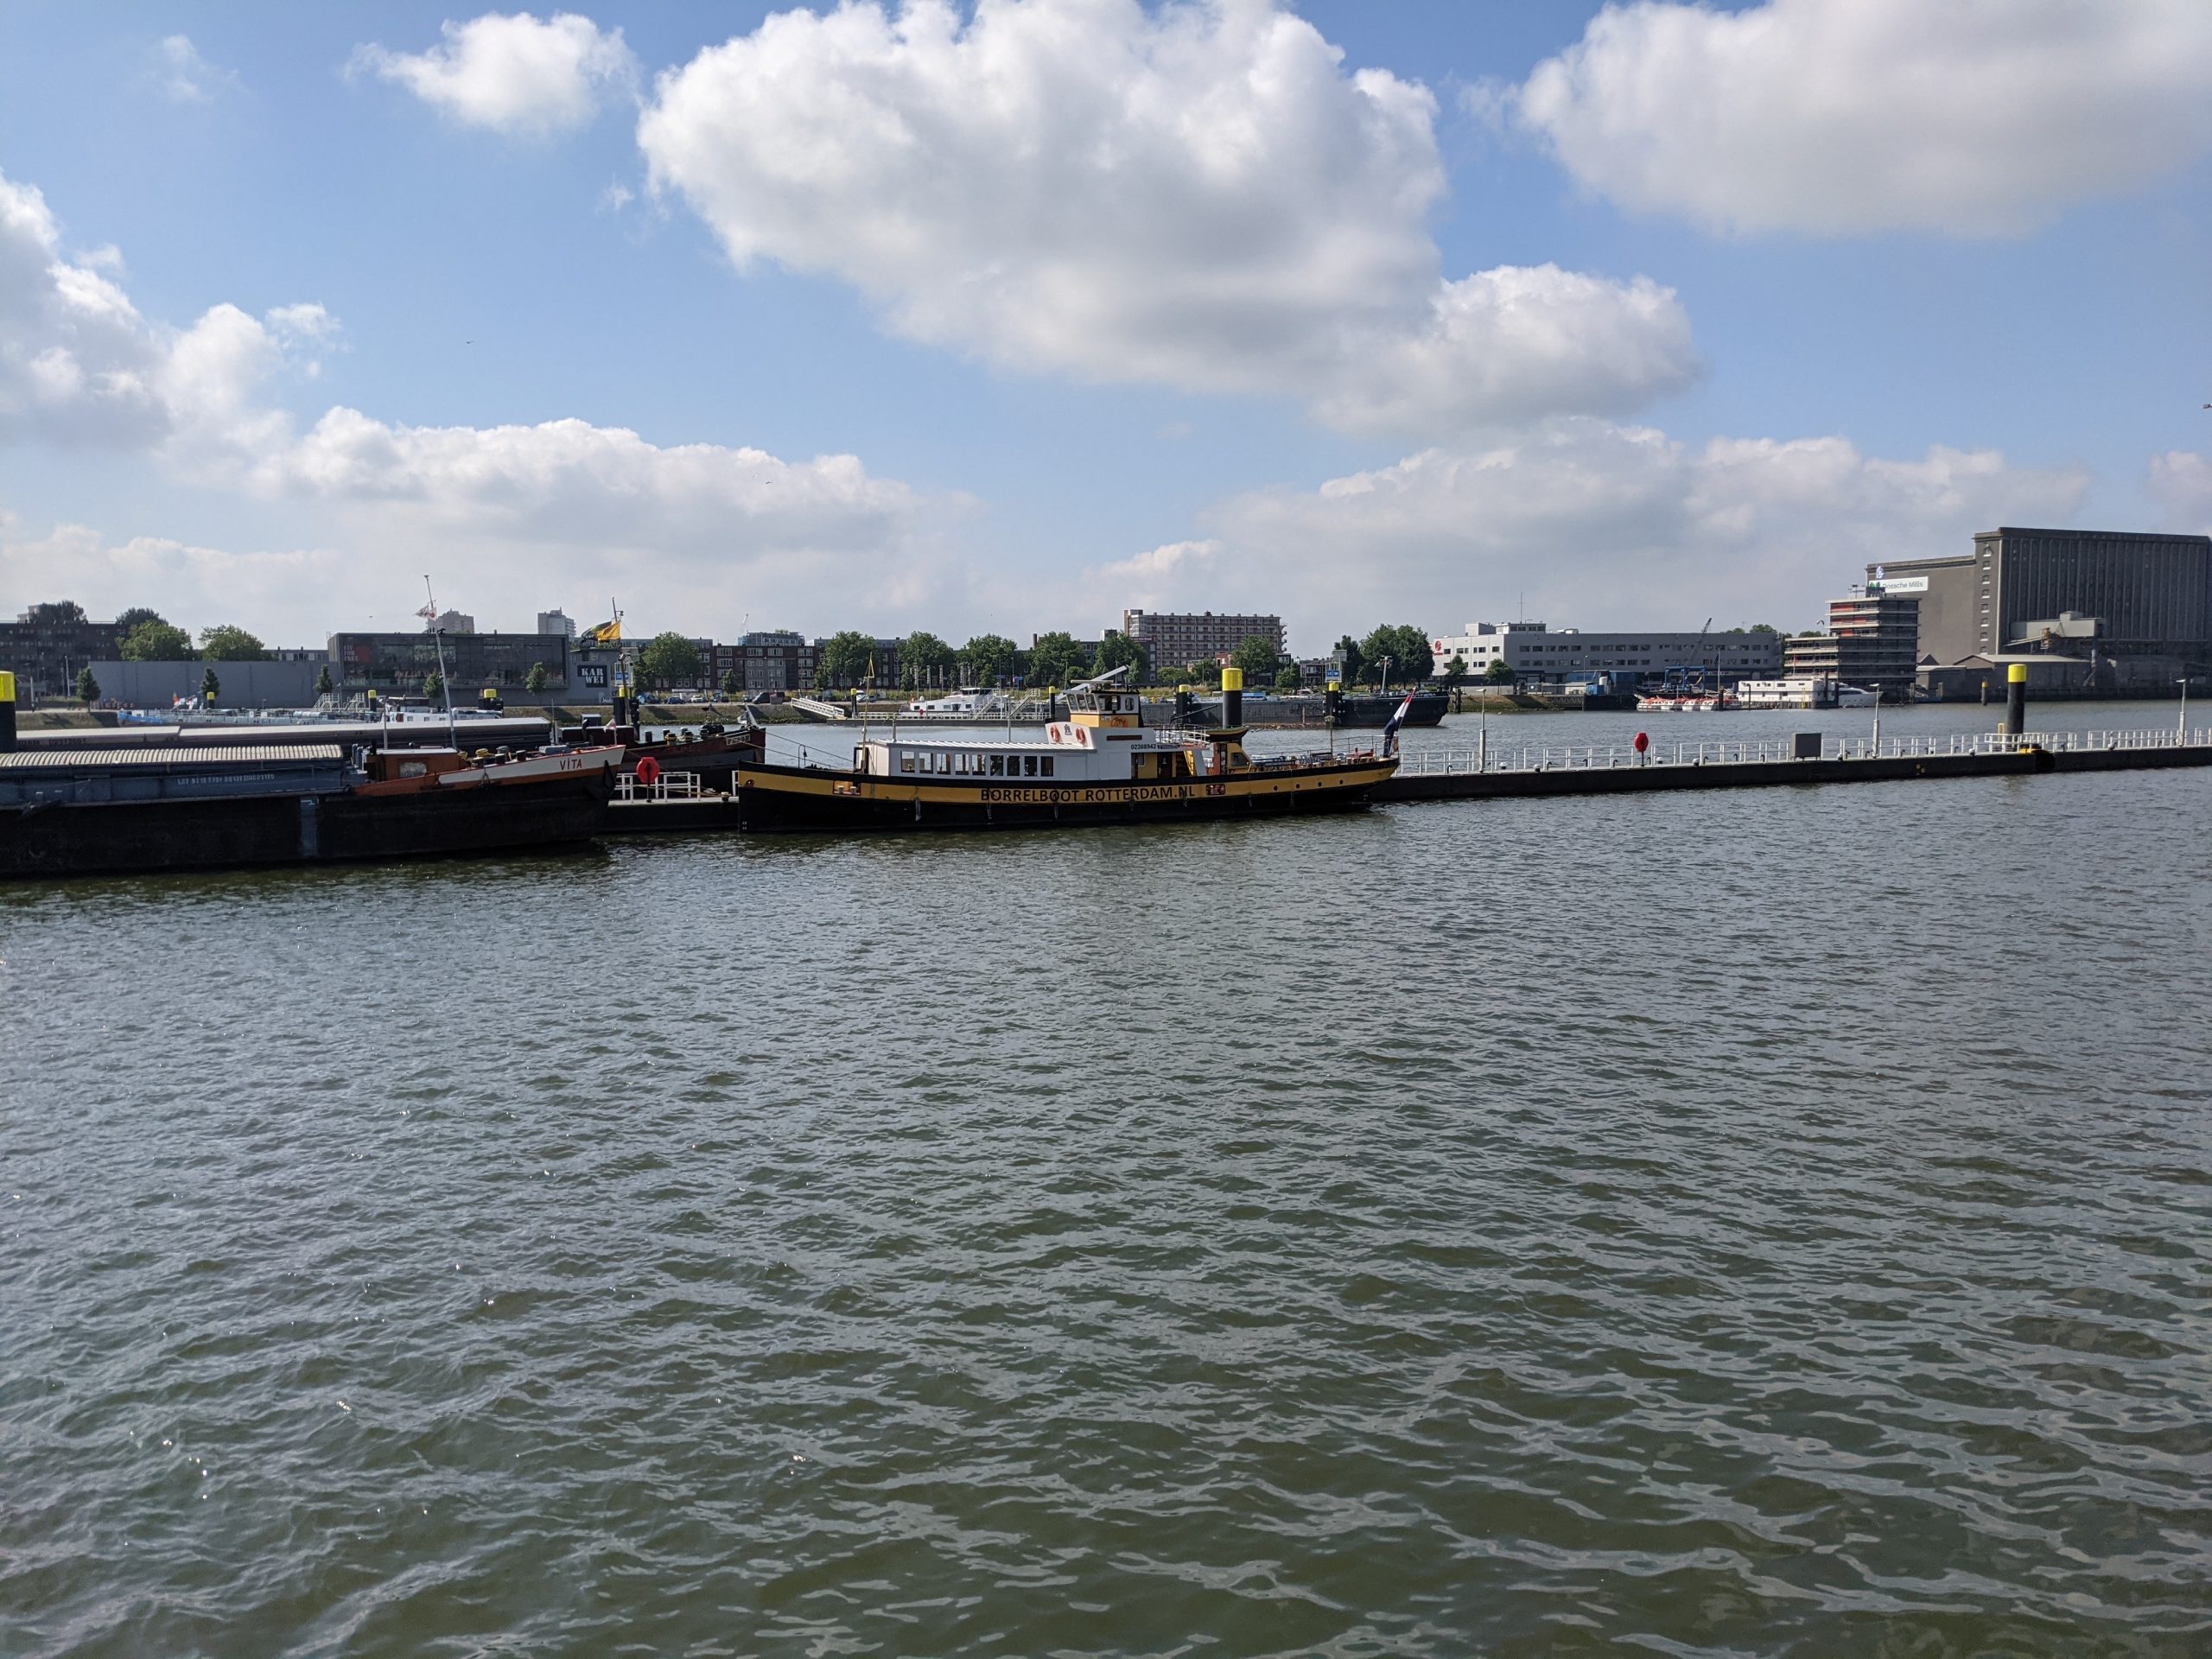 Ome Aad's Borrelboot ligt nu nog in de Maashaven, maar gaat verhuizen naar de Leuvehaven. (Foto Jelmer Bastiaans)